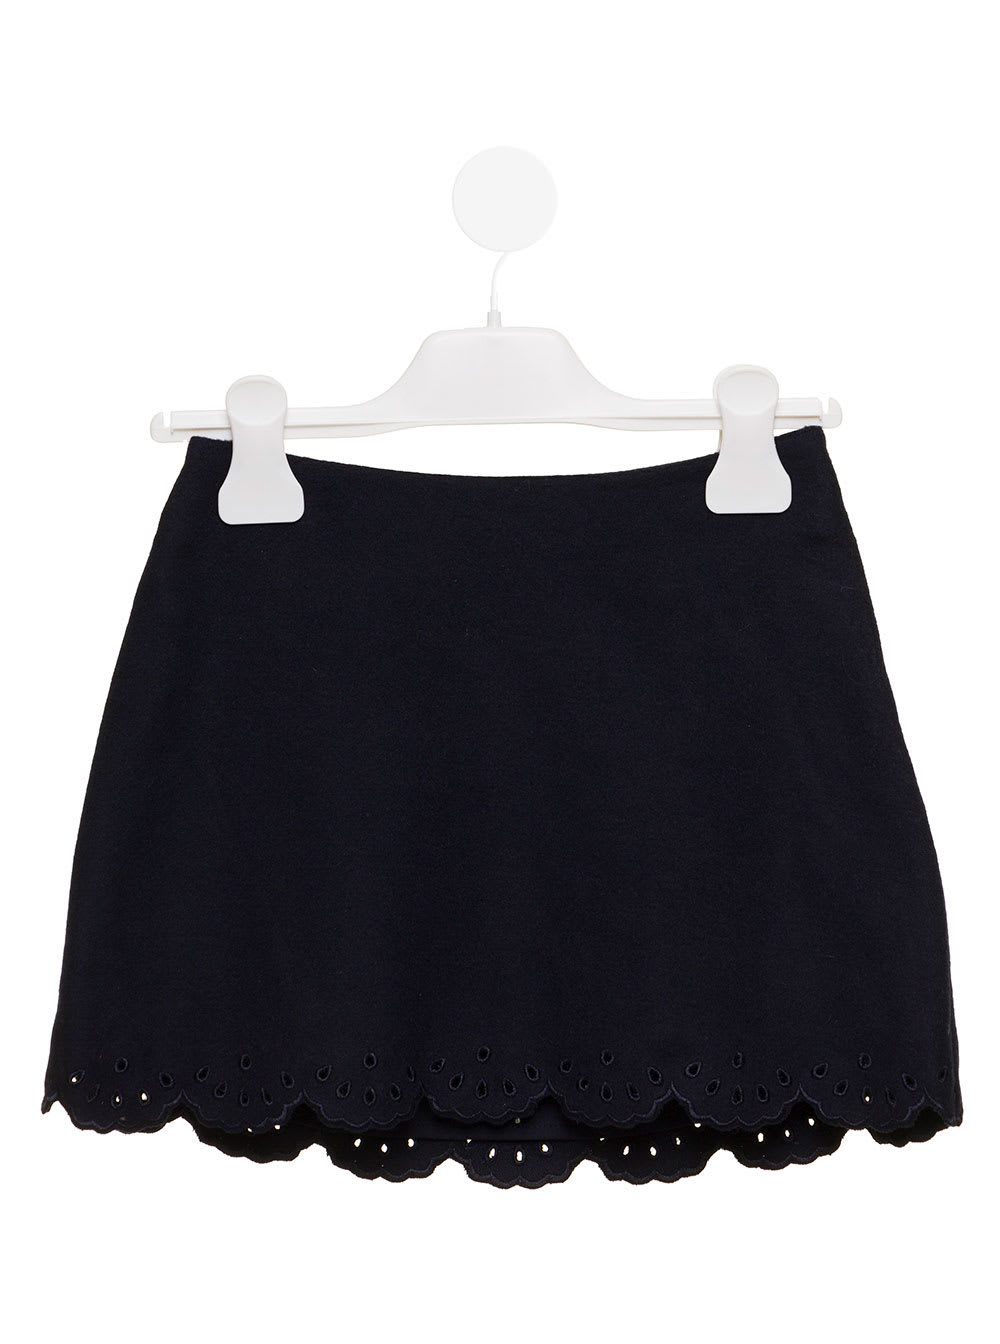 Chloé Kids Girls Black Skirt With Flared Hem